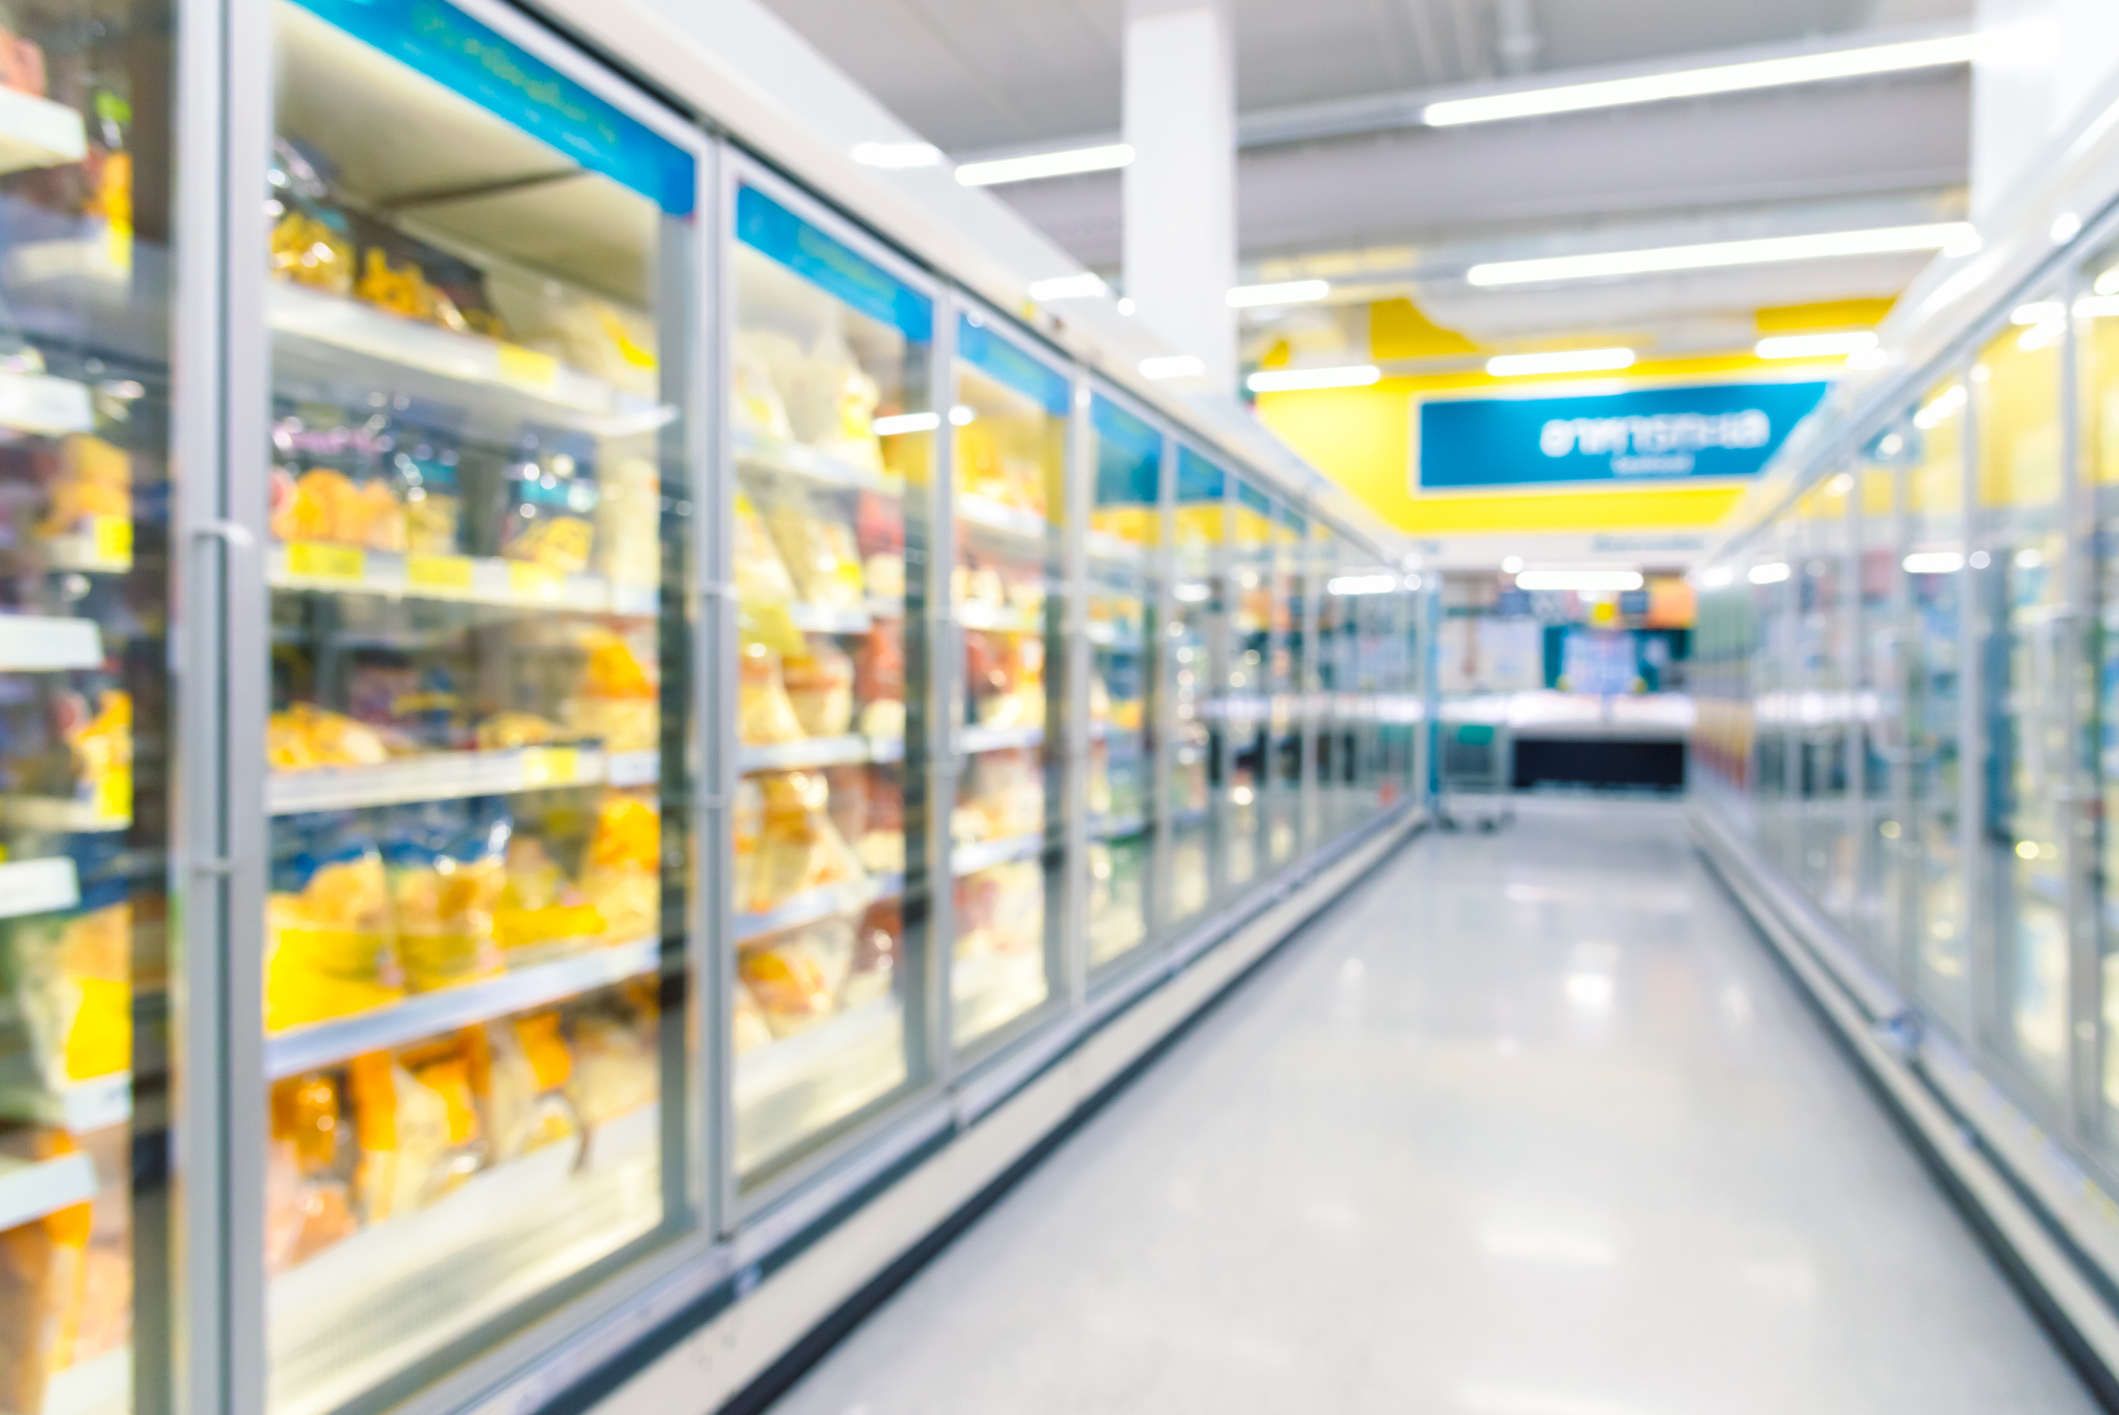 Grocery Store Freezer Aisle - Congelados Supermercado - 2119x1415 Wallpaper  